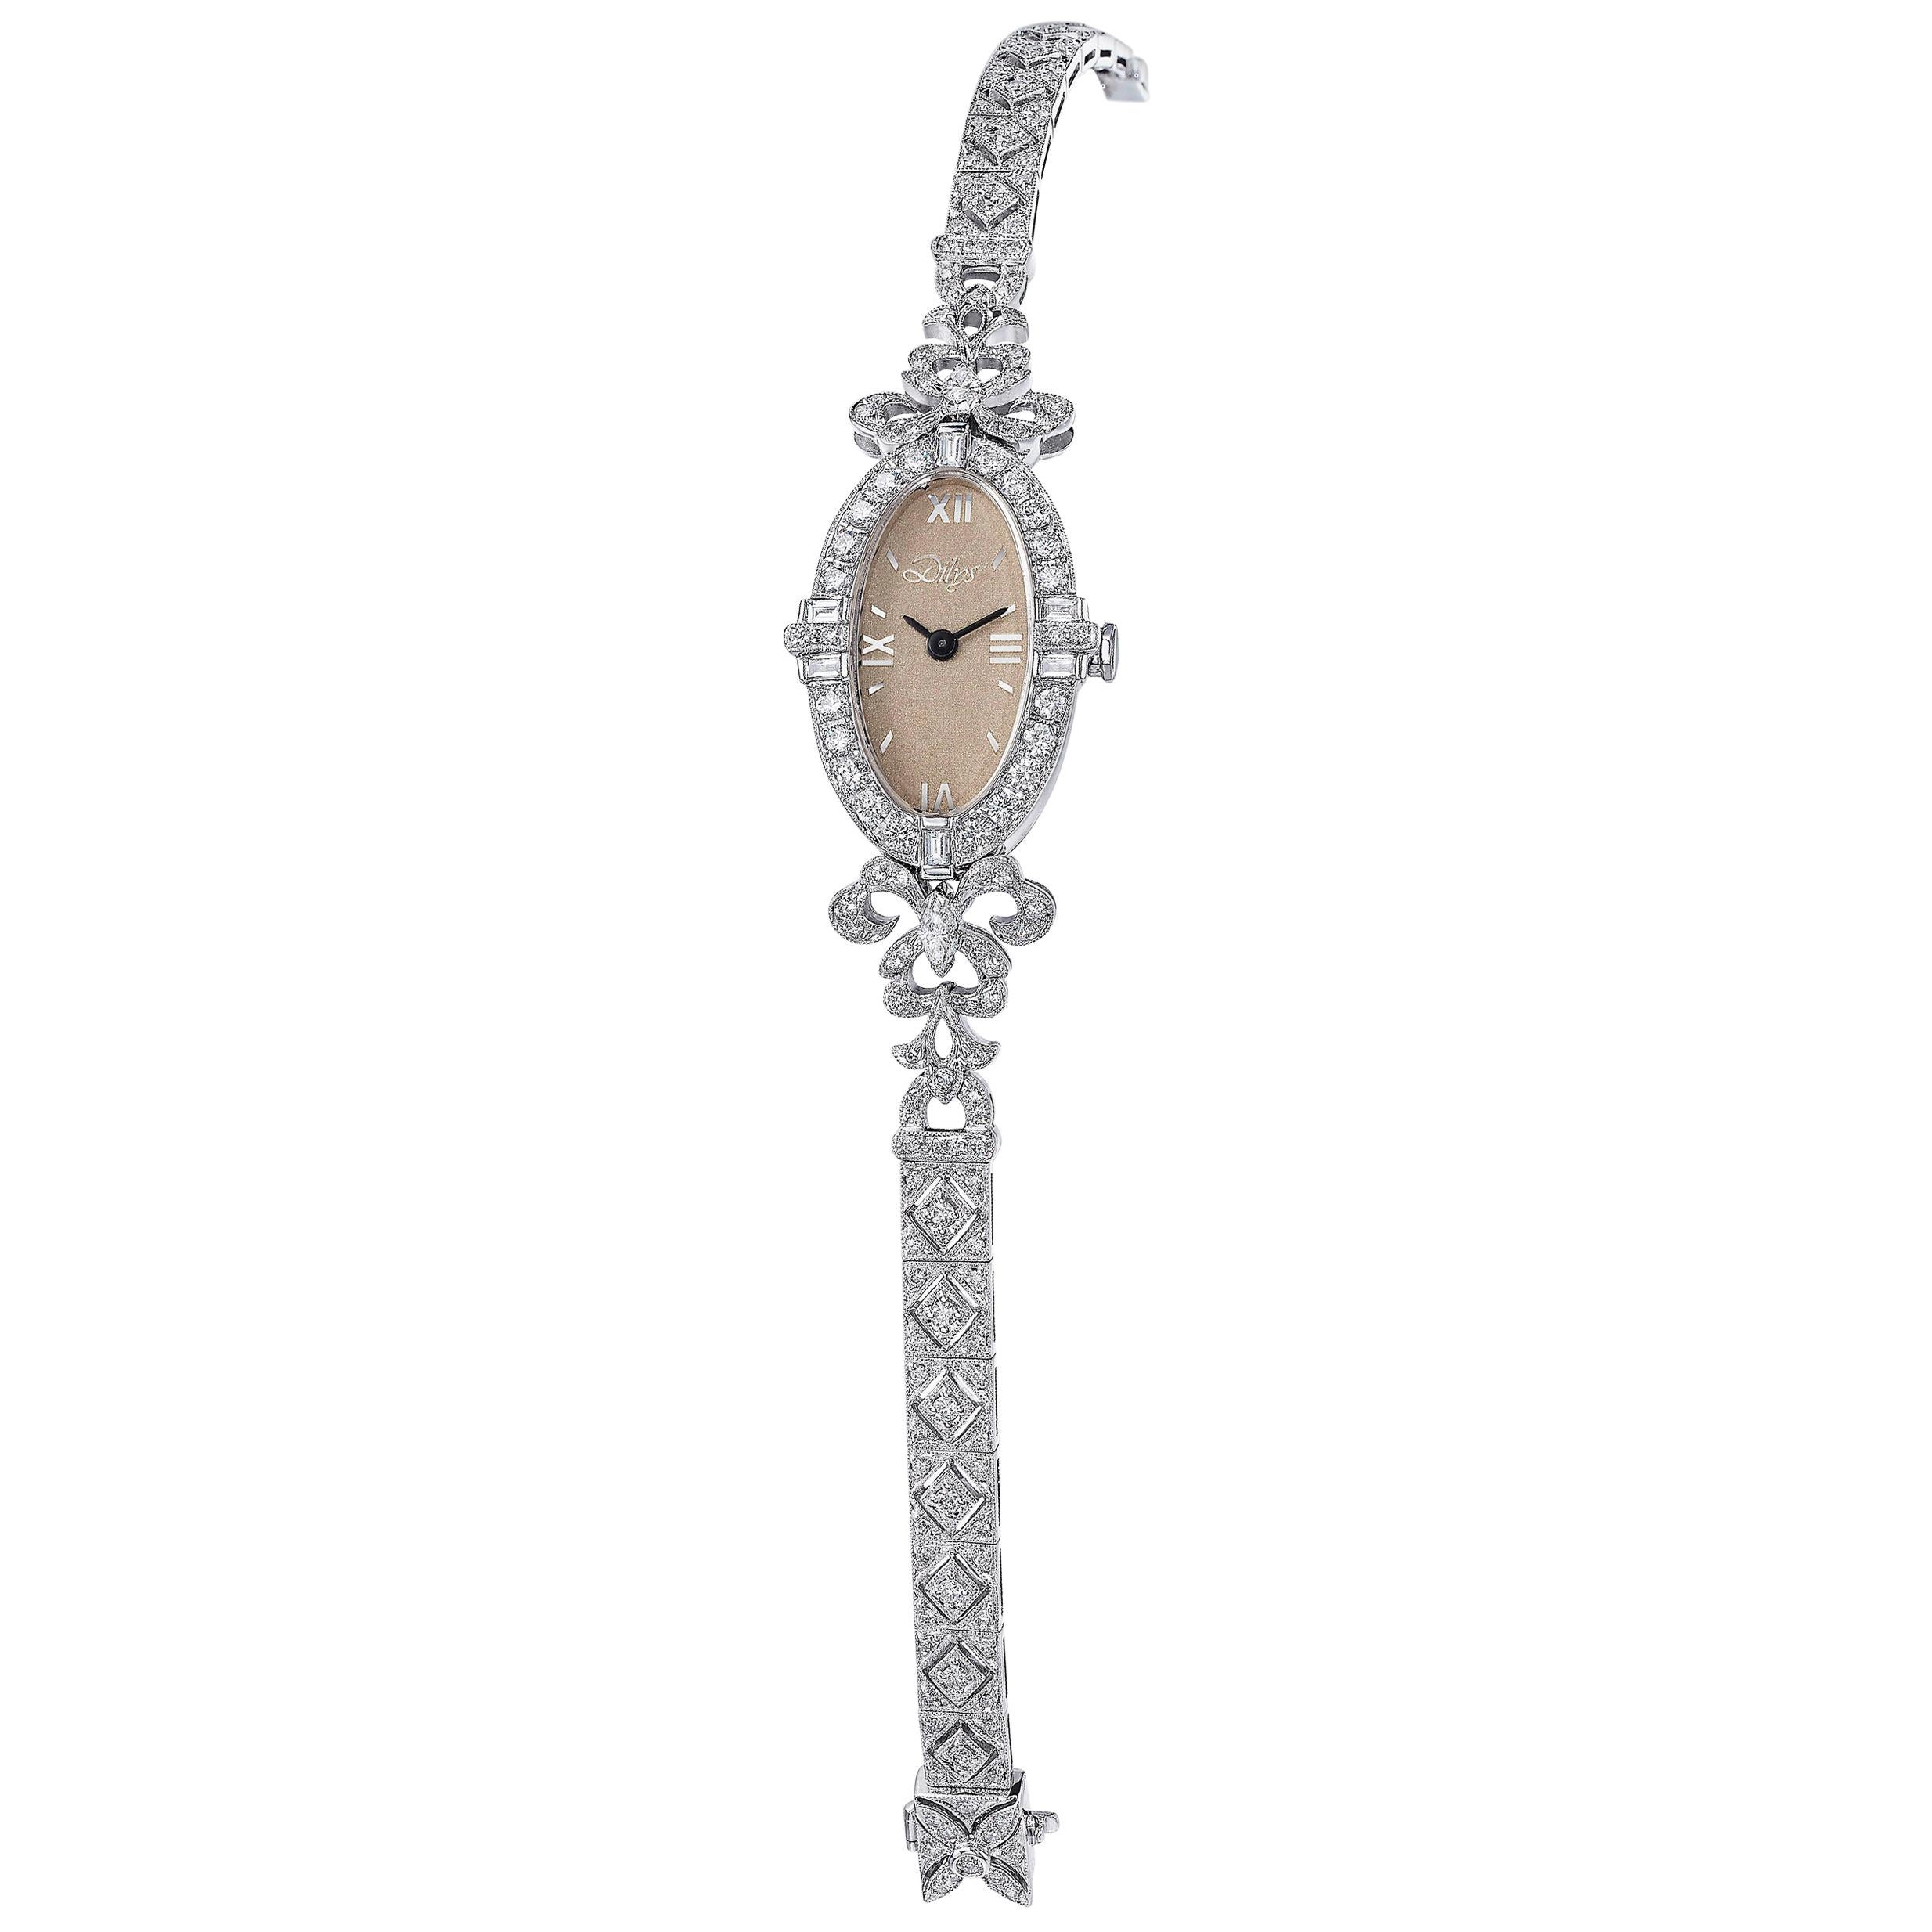 Die außergewöhnliche Dilys' Diamantuhr mit Schweizer Quarzwerk aus 18-karätigem Gold ist von der Art Déco inspiriert und besticht durch ihre filigranen Ausschnitte und Konturen. Dieser Zeitmesser spricht für sich selbst und ist ein tragbares